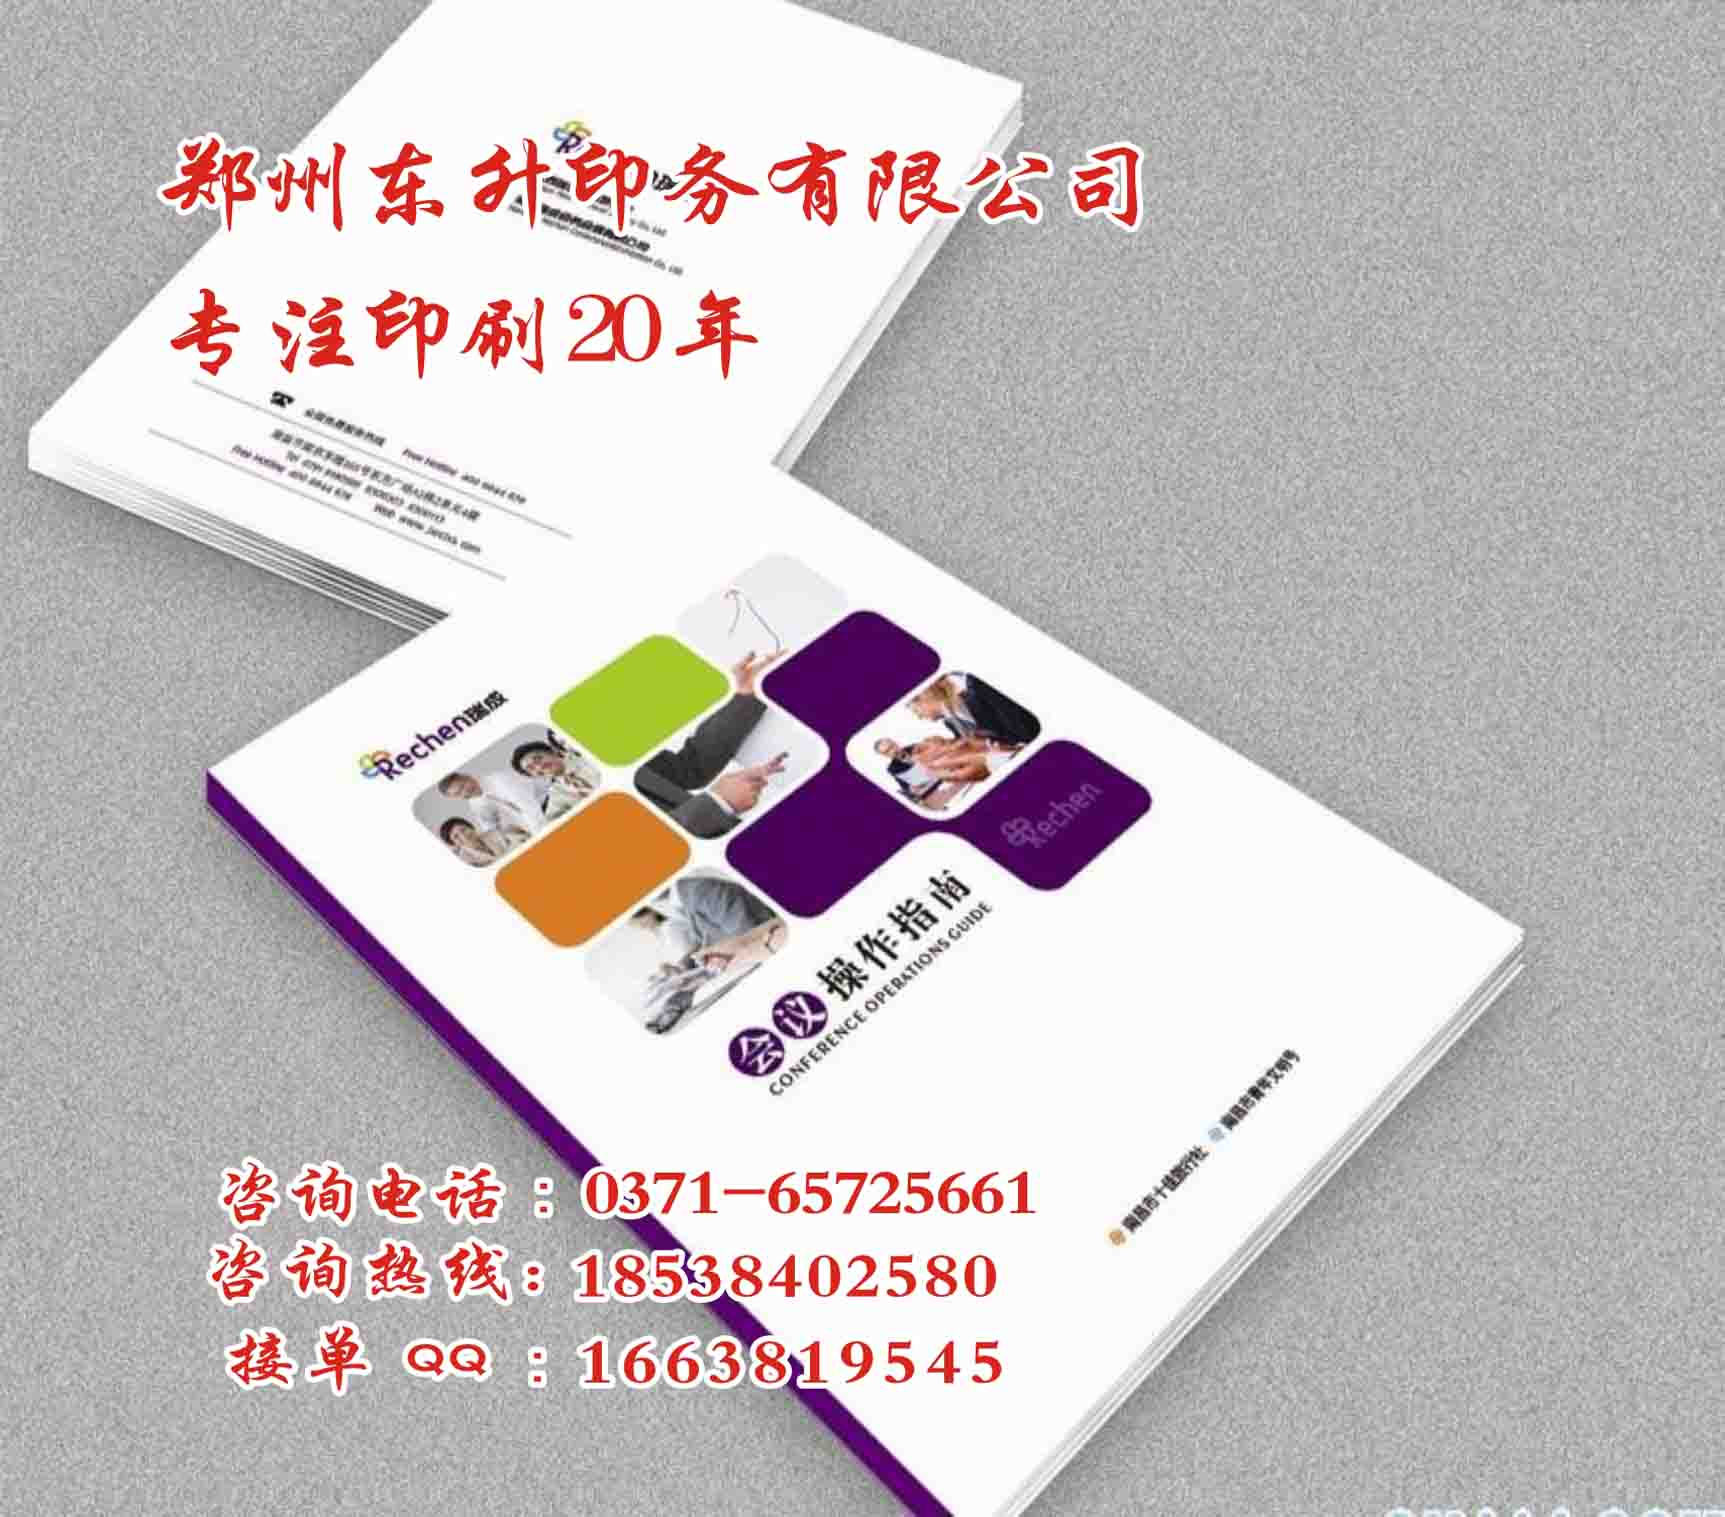 供应用于纸质品印刷|会议资料印刷的郑州黑白印刷厂家 郑州专业黑白书刊印刷供应厂家